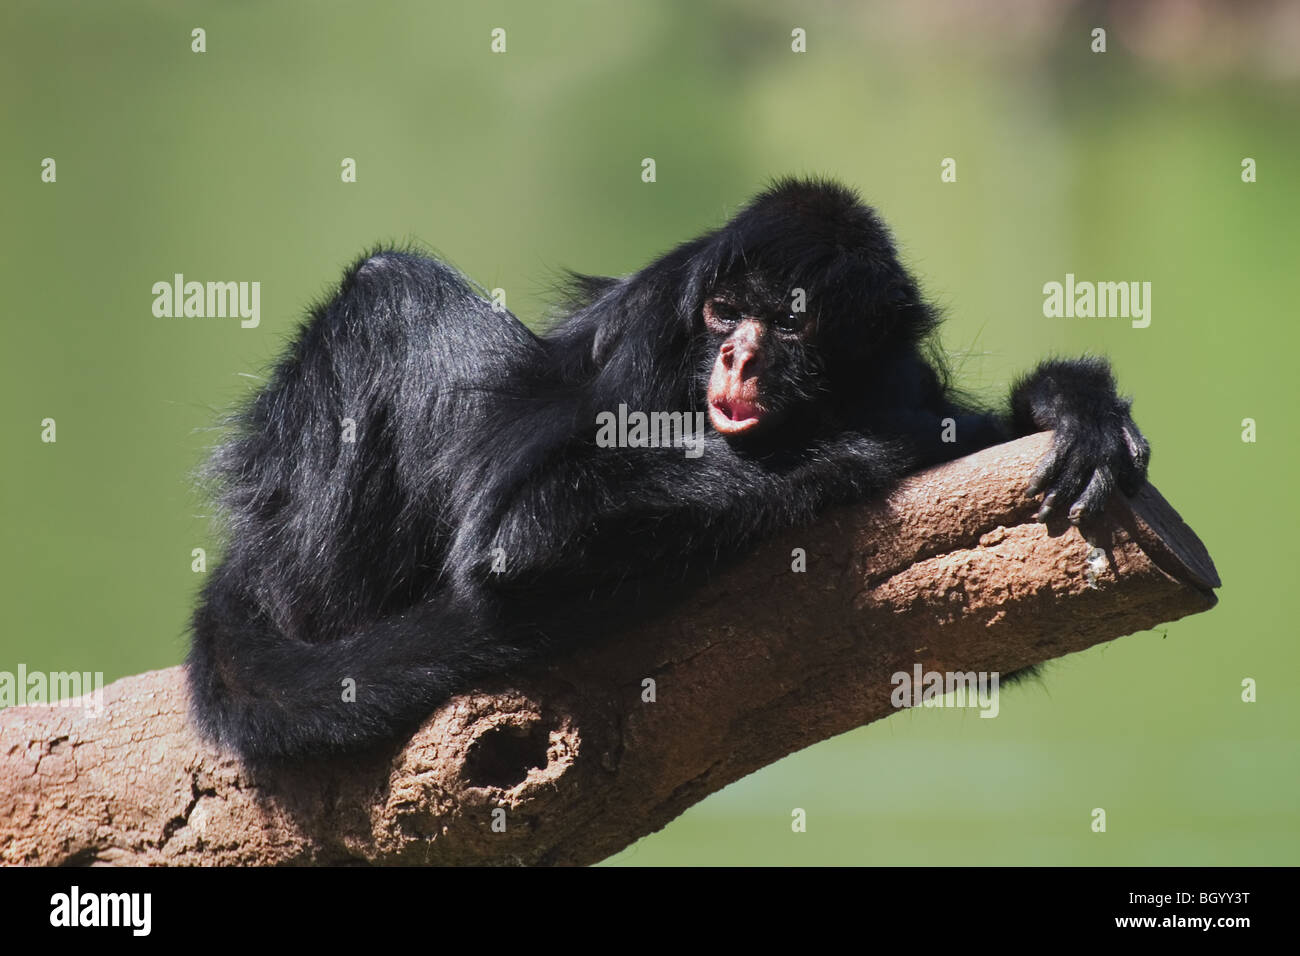 Nero-di fronte Spider Monkey (Ateles paniscus chamek) di appoggio nella struttura ad albero. Vivono nella foresta del centro America del Sud, Brasile. Foto Stock